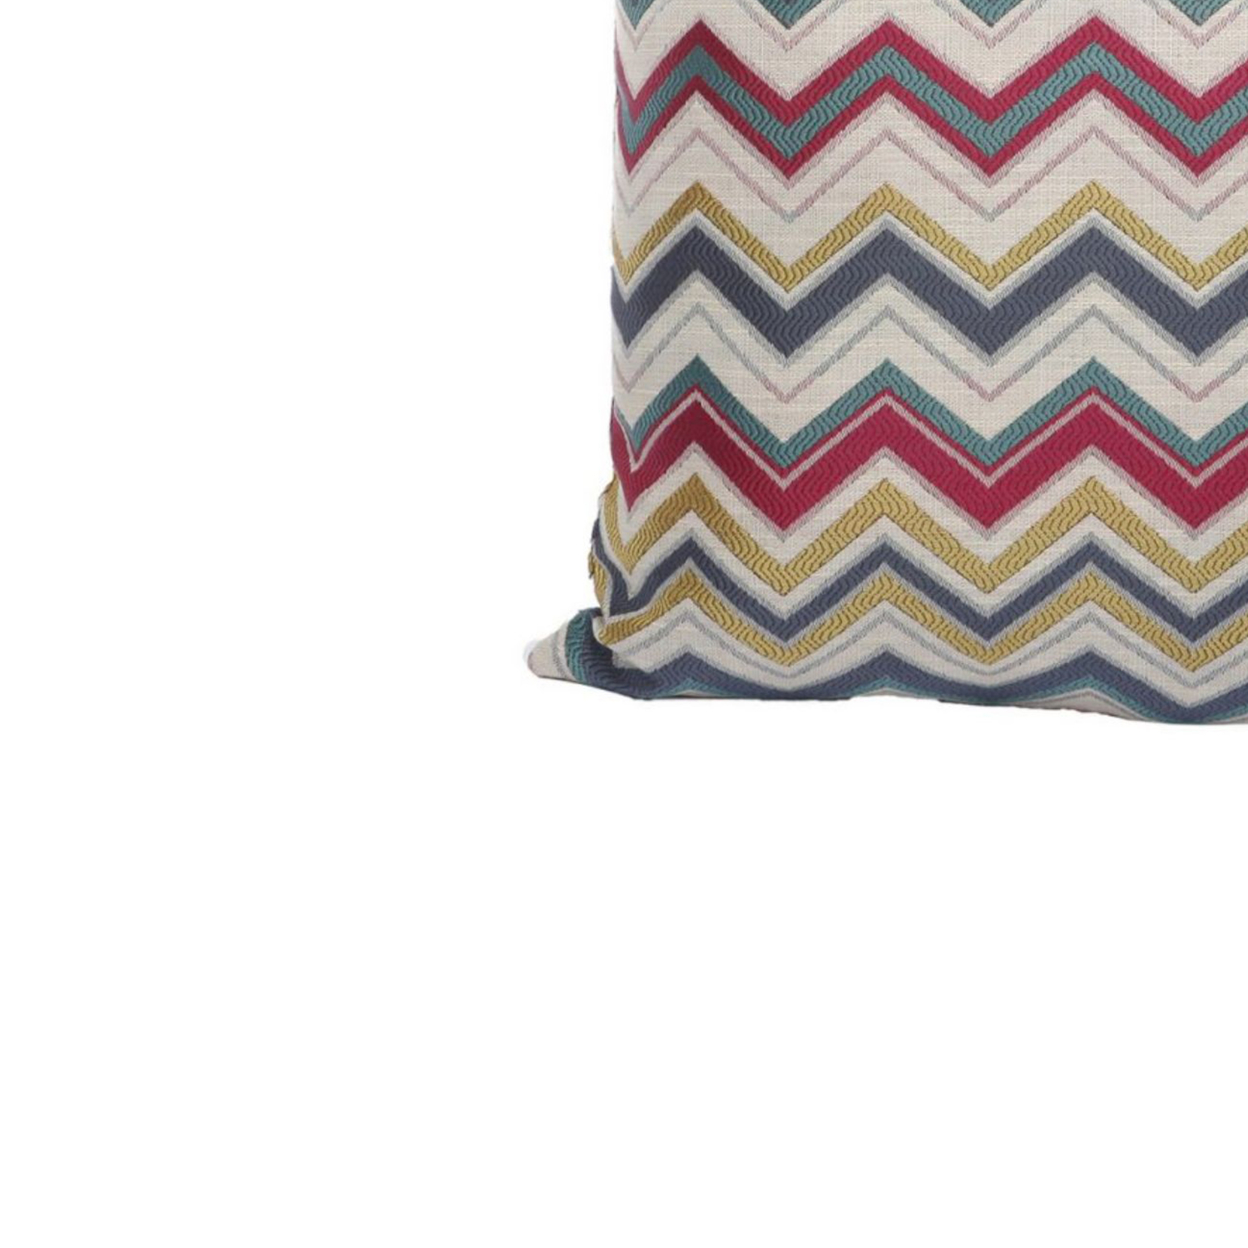 Woven Design Fabric Accent Pillow In Zigzag Pattern, Multicolor- Saltoro Sherpi